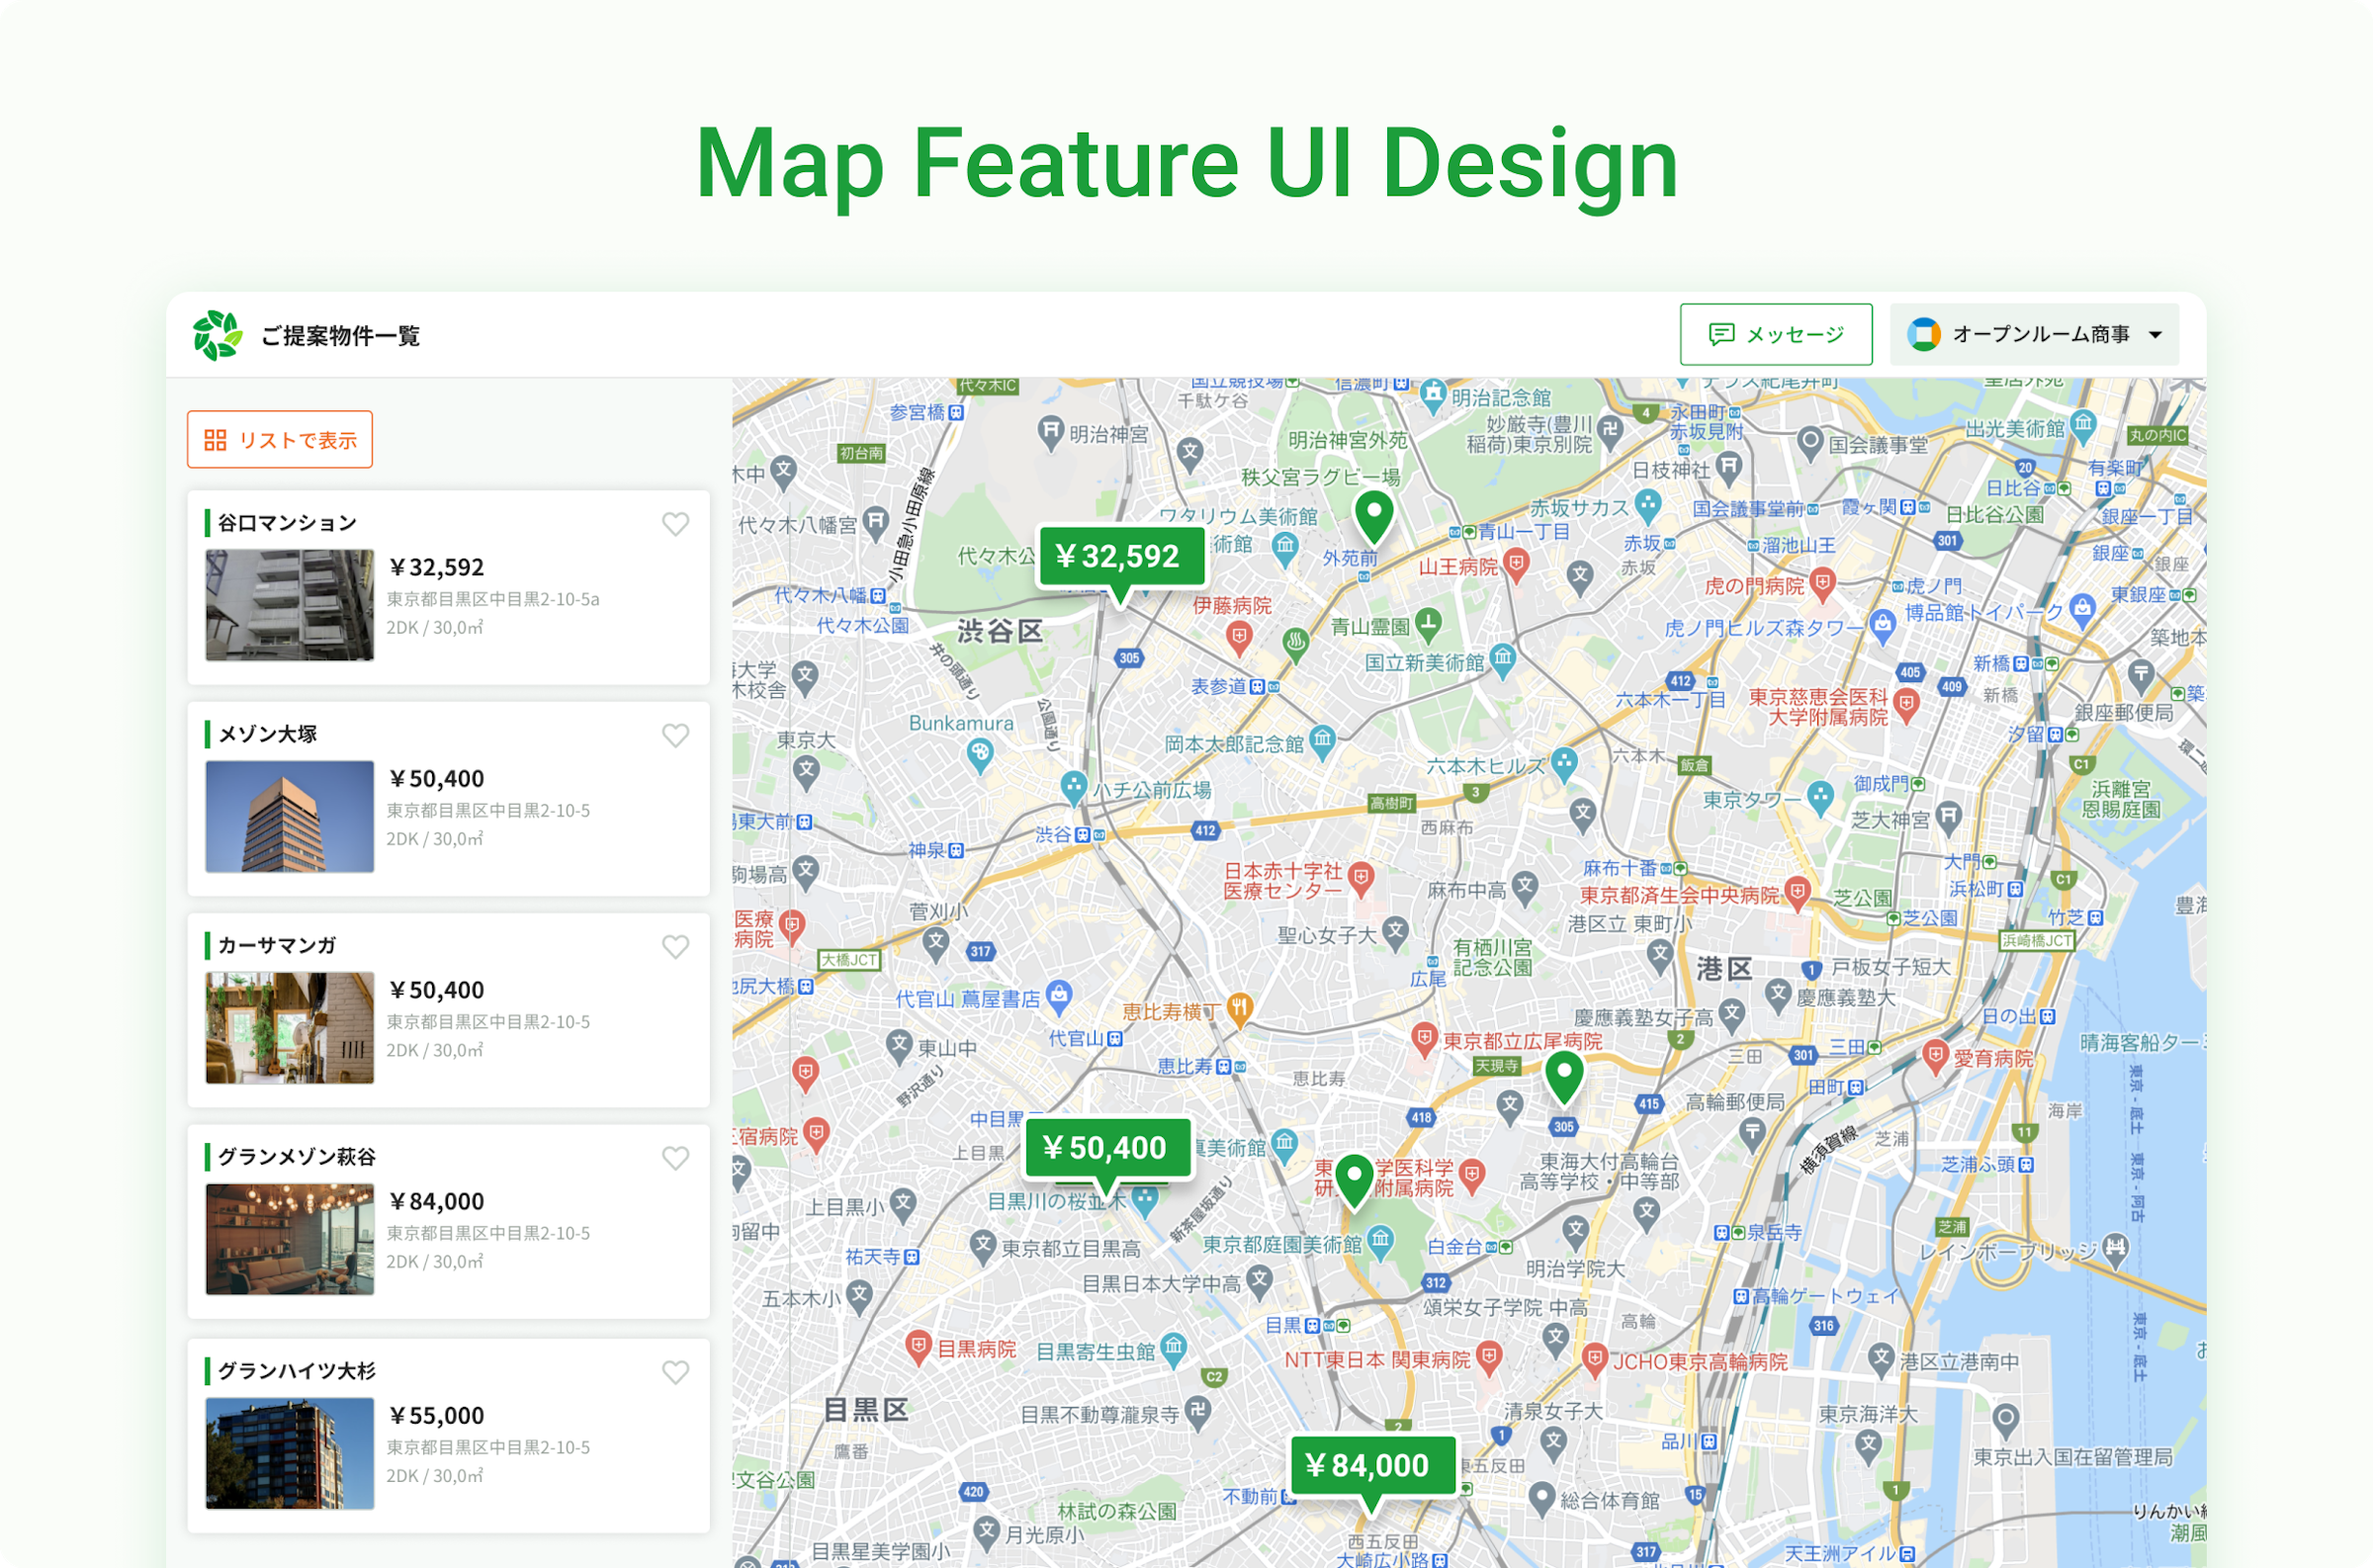 上部に「Map Feature UI Design」と書かれた画像。中央にはご提案物件一覧として、地図上に3つ吹き出しが書かれており、家賃が表示されている。